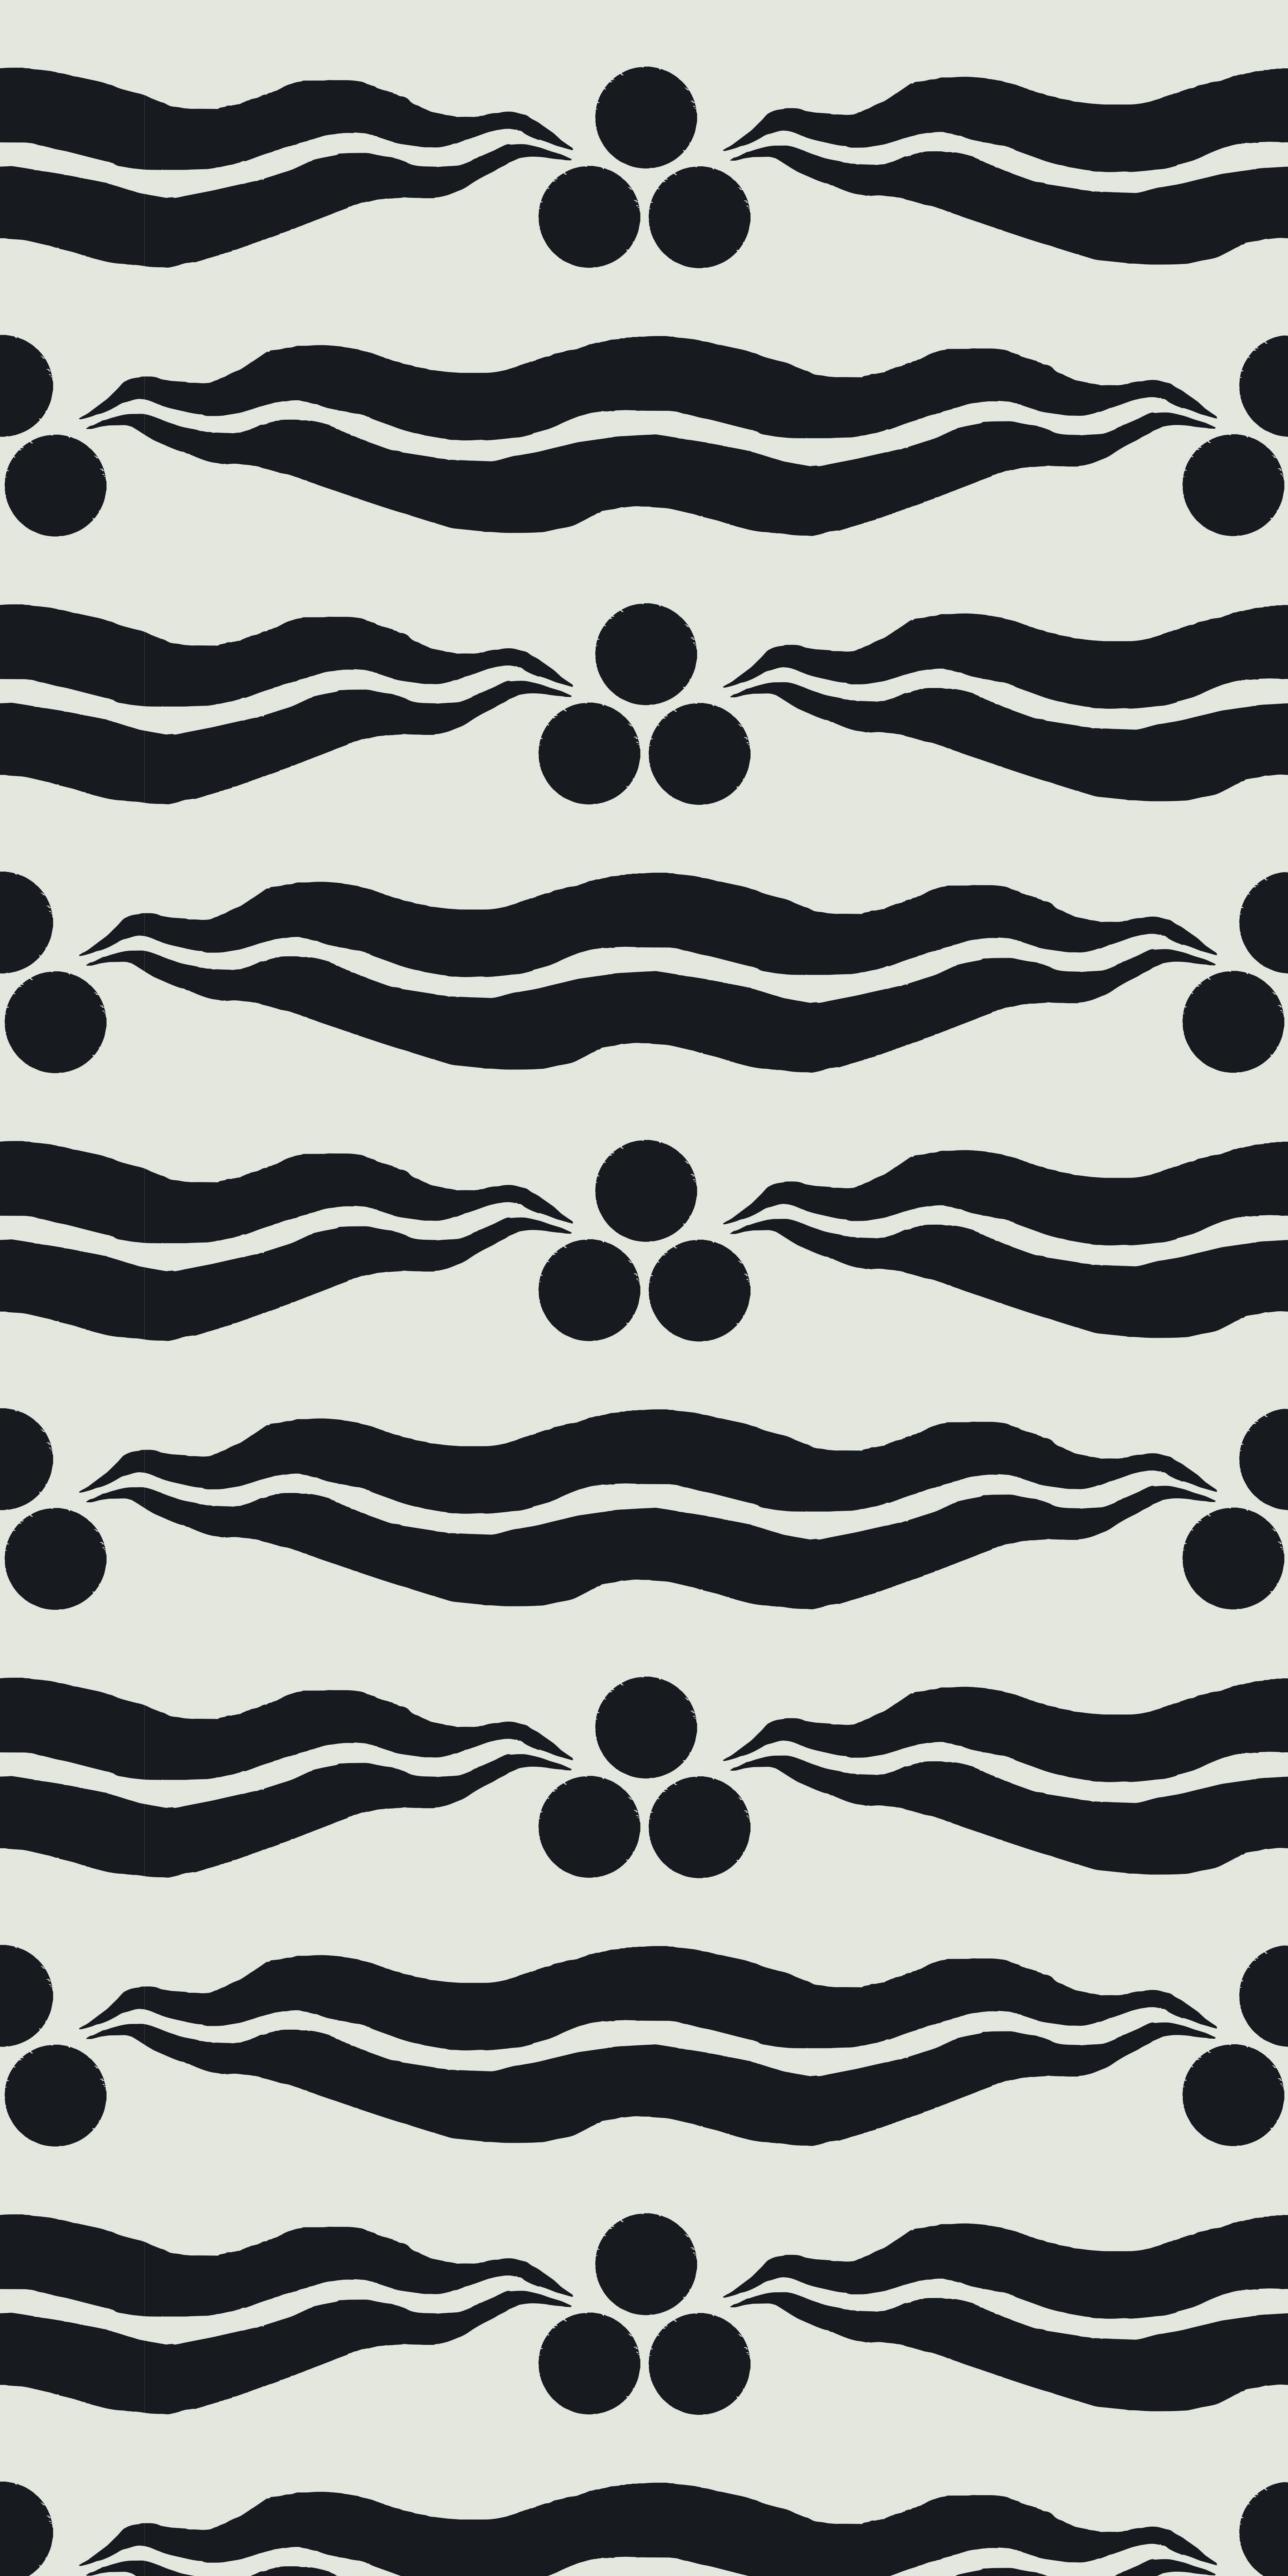 Turkish Stripe Peel & Stick Wallpaper, Gray & Black, 2' x 10'